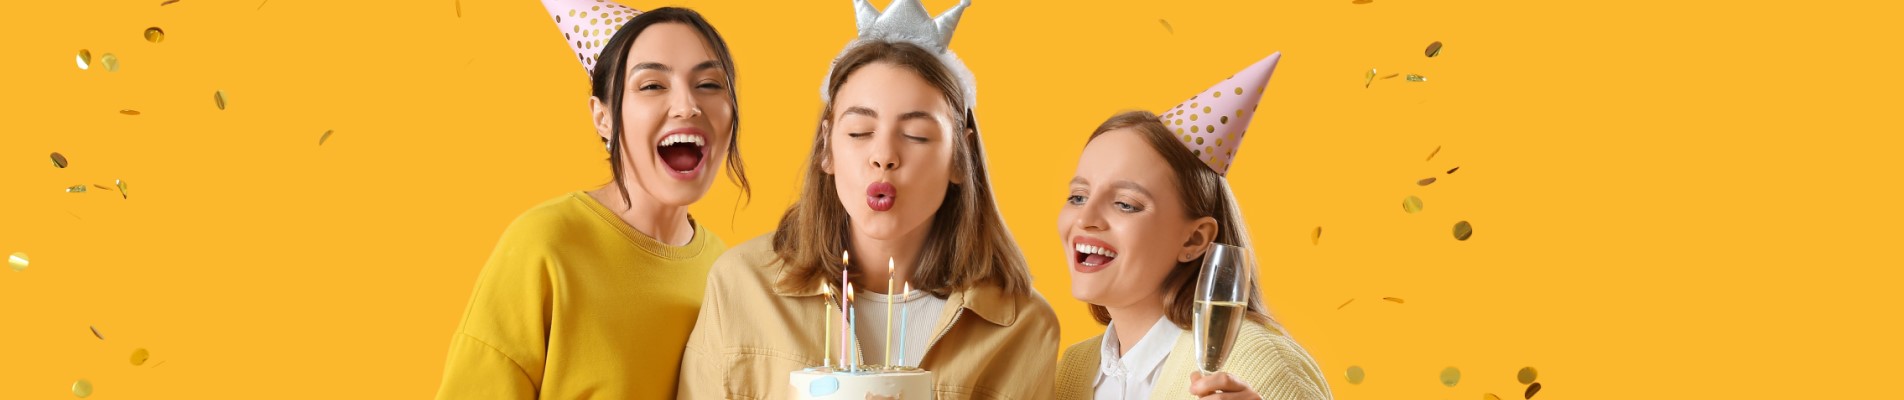 Festa de aniversário econômica: 11 dicas de como fazer | Foto de três amigas em um fundo amarelo, comemorando um aniversário com bolo e decorações coloridas | Economia e renda extra | Eu Dou Conta